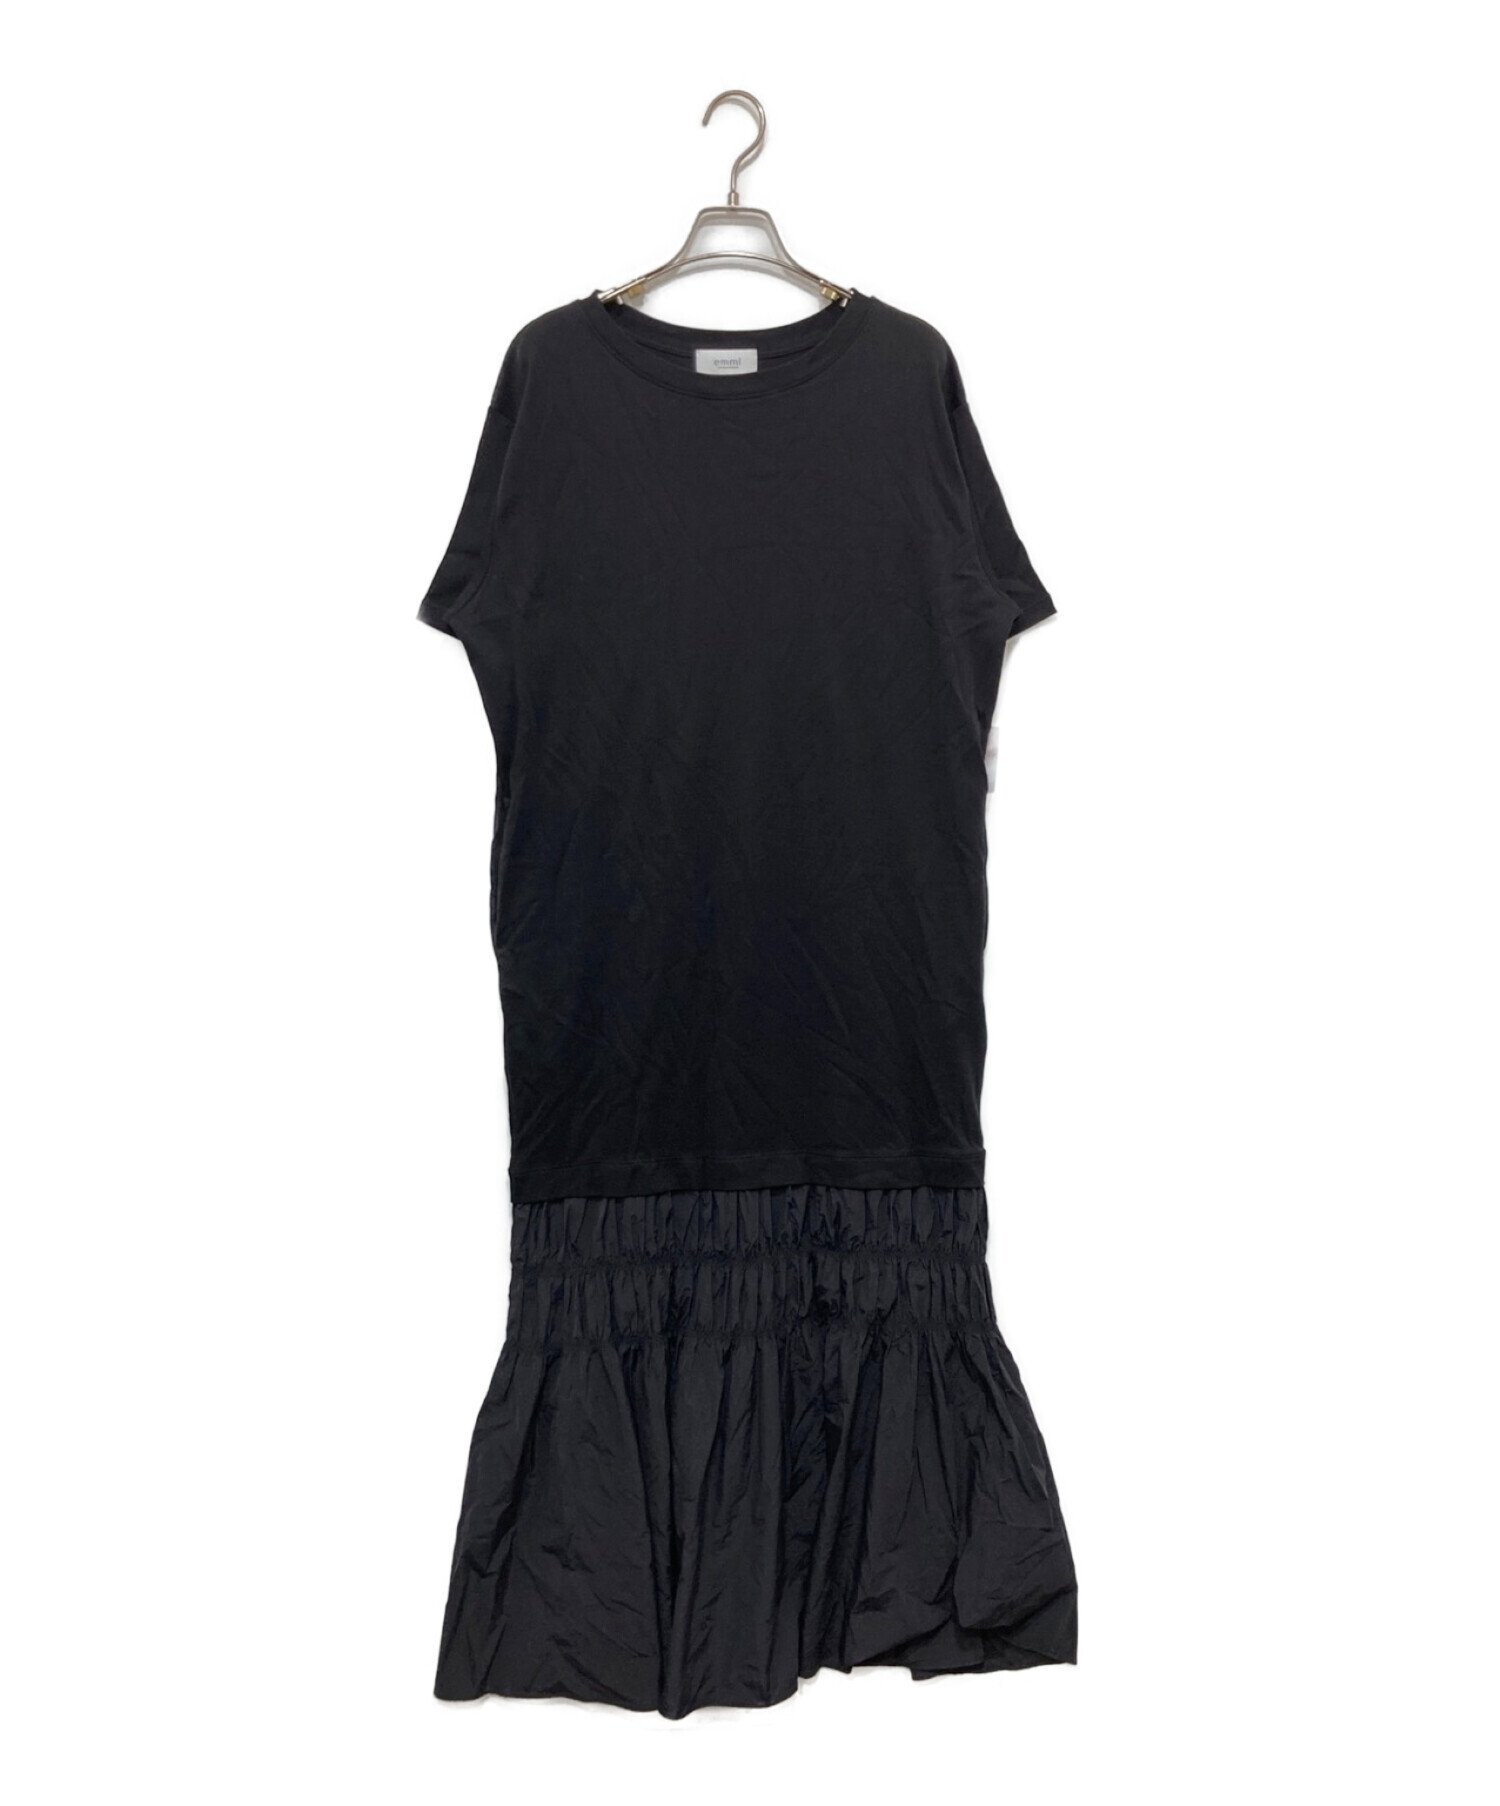 emmi atelier (エミアトリエ) ドッキングTシャツワンピース ブラック サイズ:1 未使用品